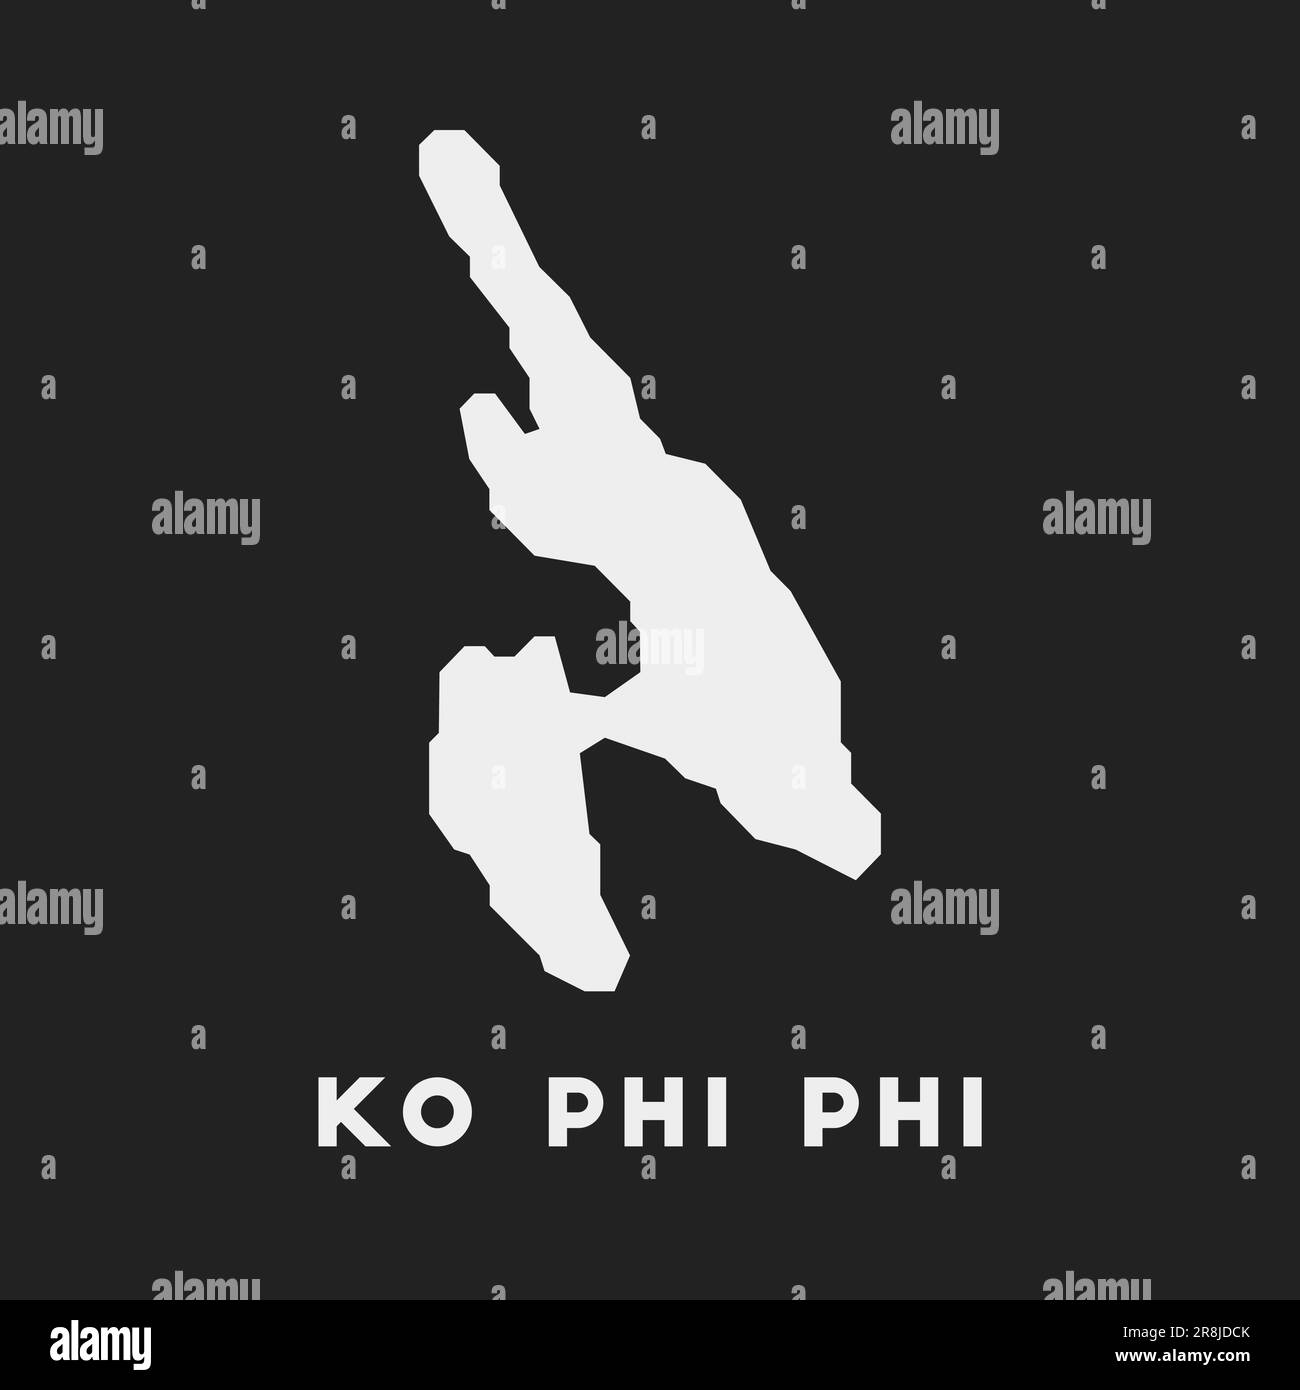 Ko Phi Symbol. Karte auf dunklem Hintergrund. Stilvolle Inselkarte mit Namen. Vektordarstellung. Stock Vektor